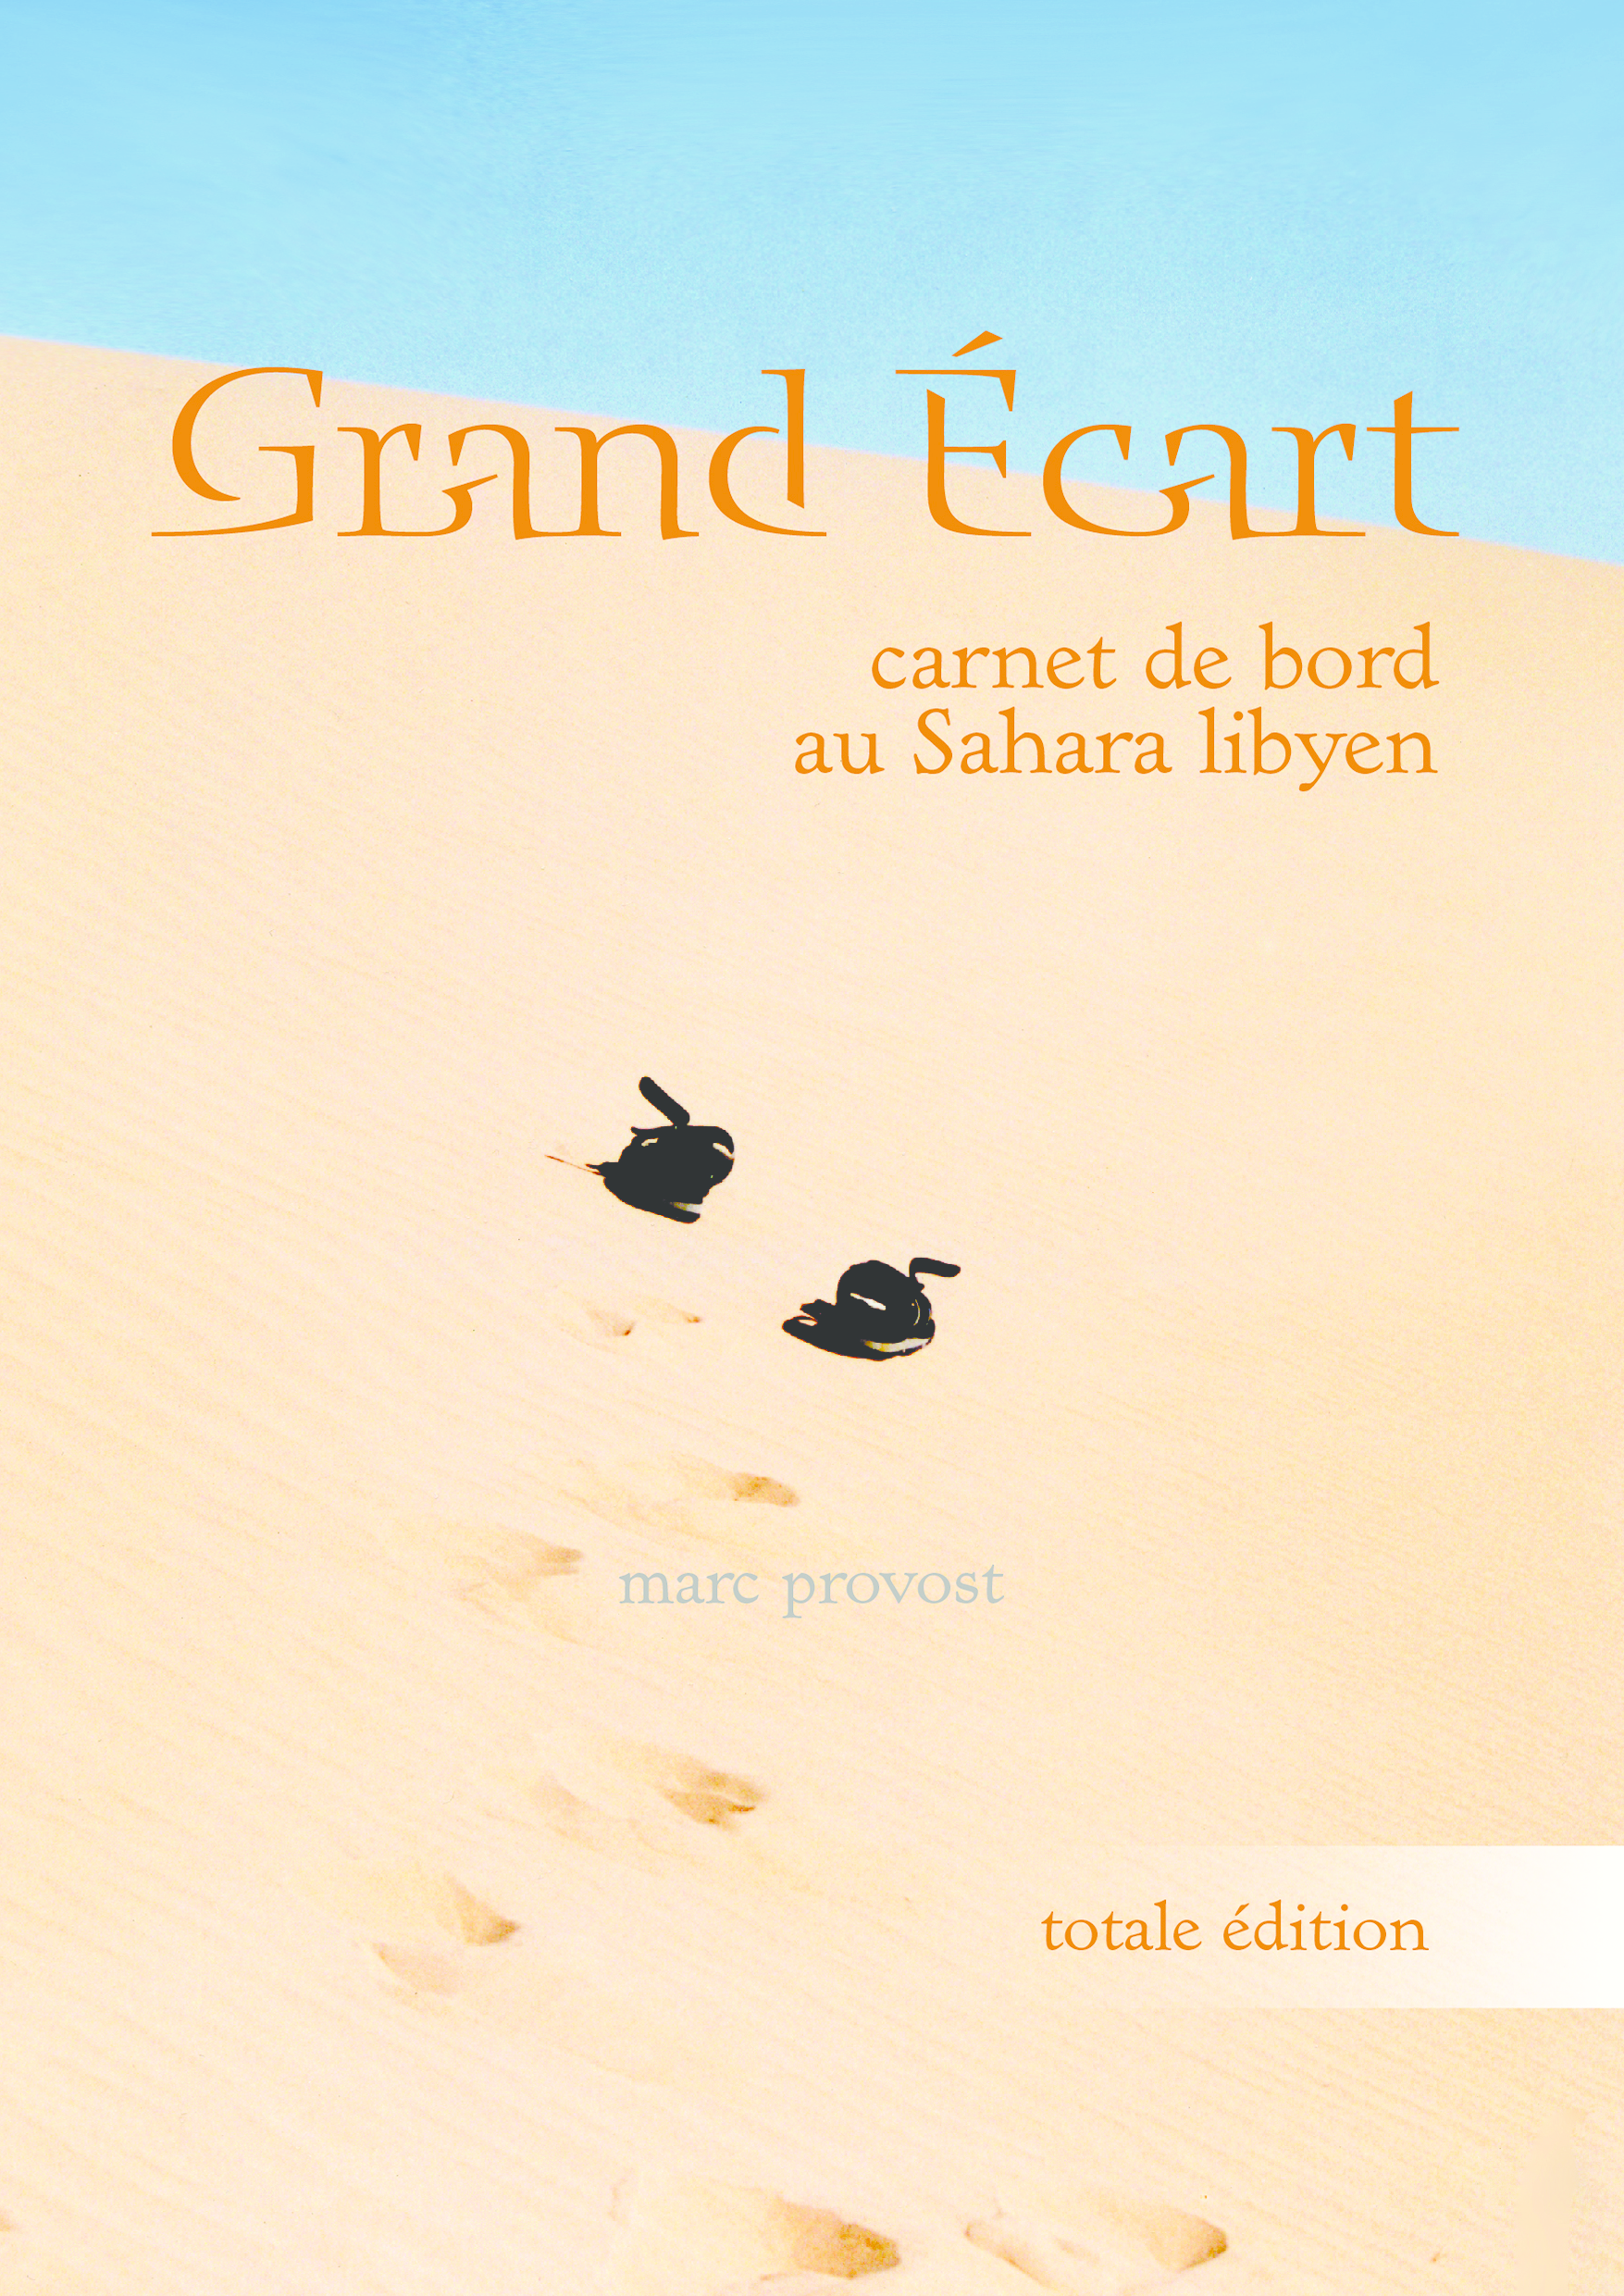 Grand Ecart (totale édition)